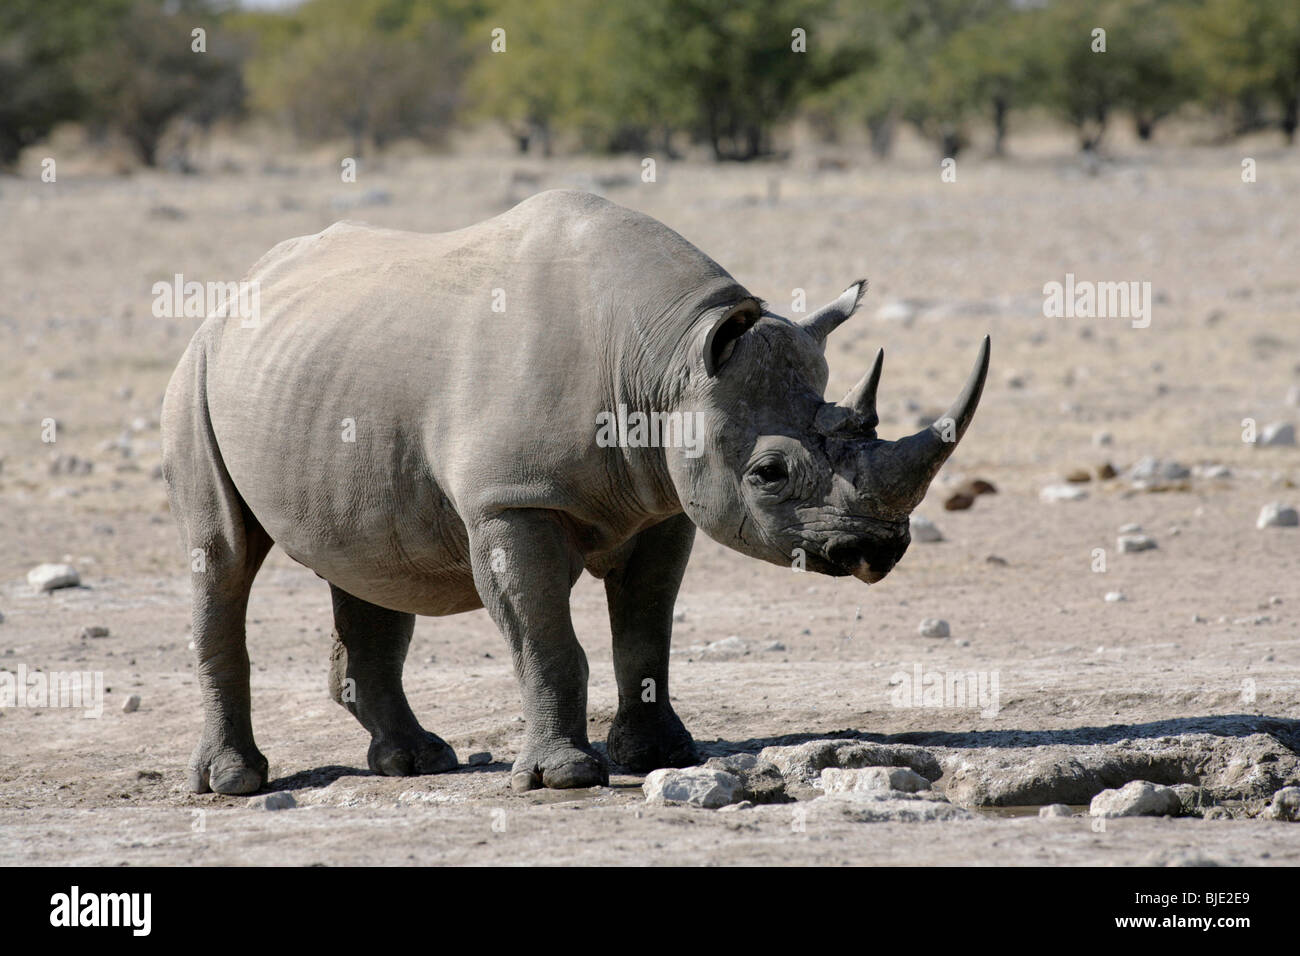 Un de plus en plus rares, surtout nocturnes, les rhinocéros noirs d'être très prudent dans la lumière du jour Banque D'Images